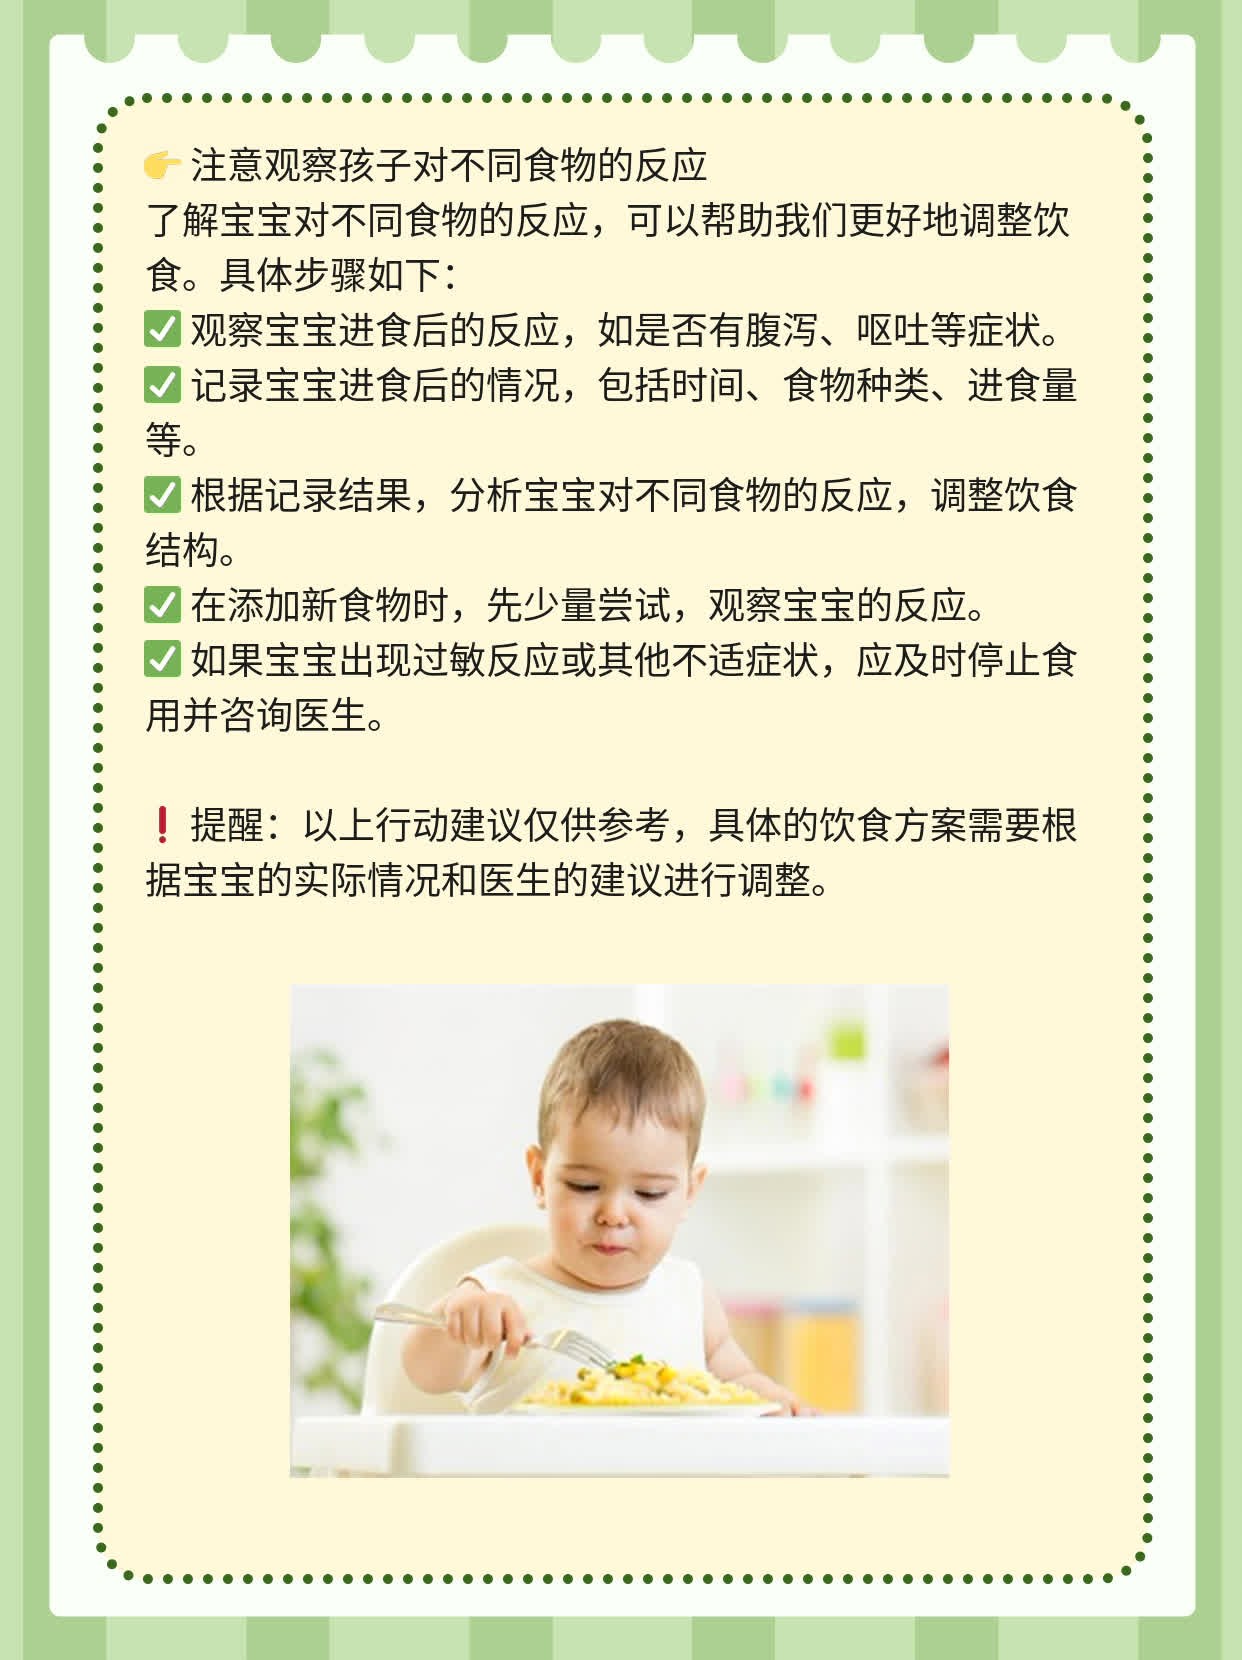 宝宝吃胚芽米比普通米更好吗？